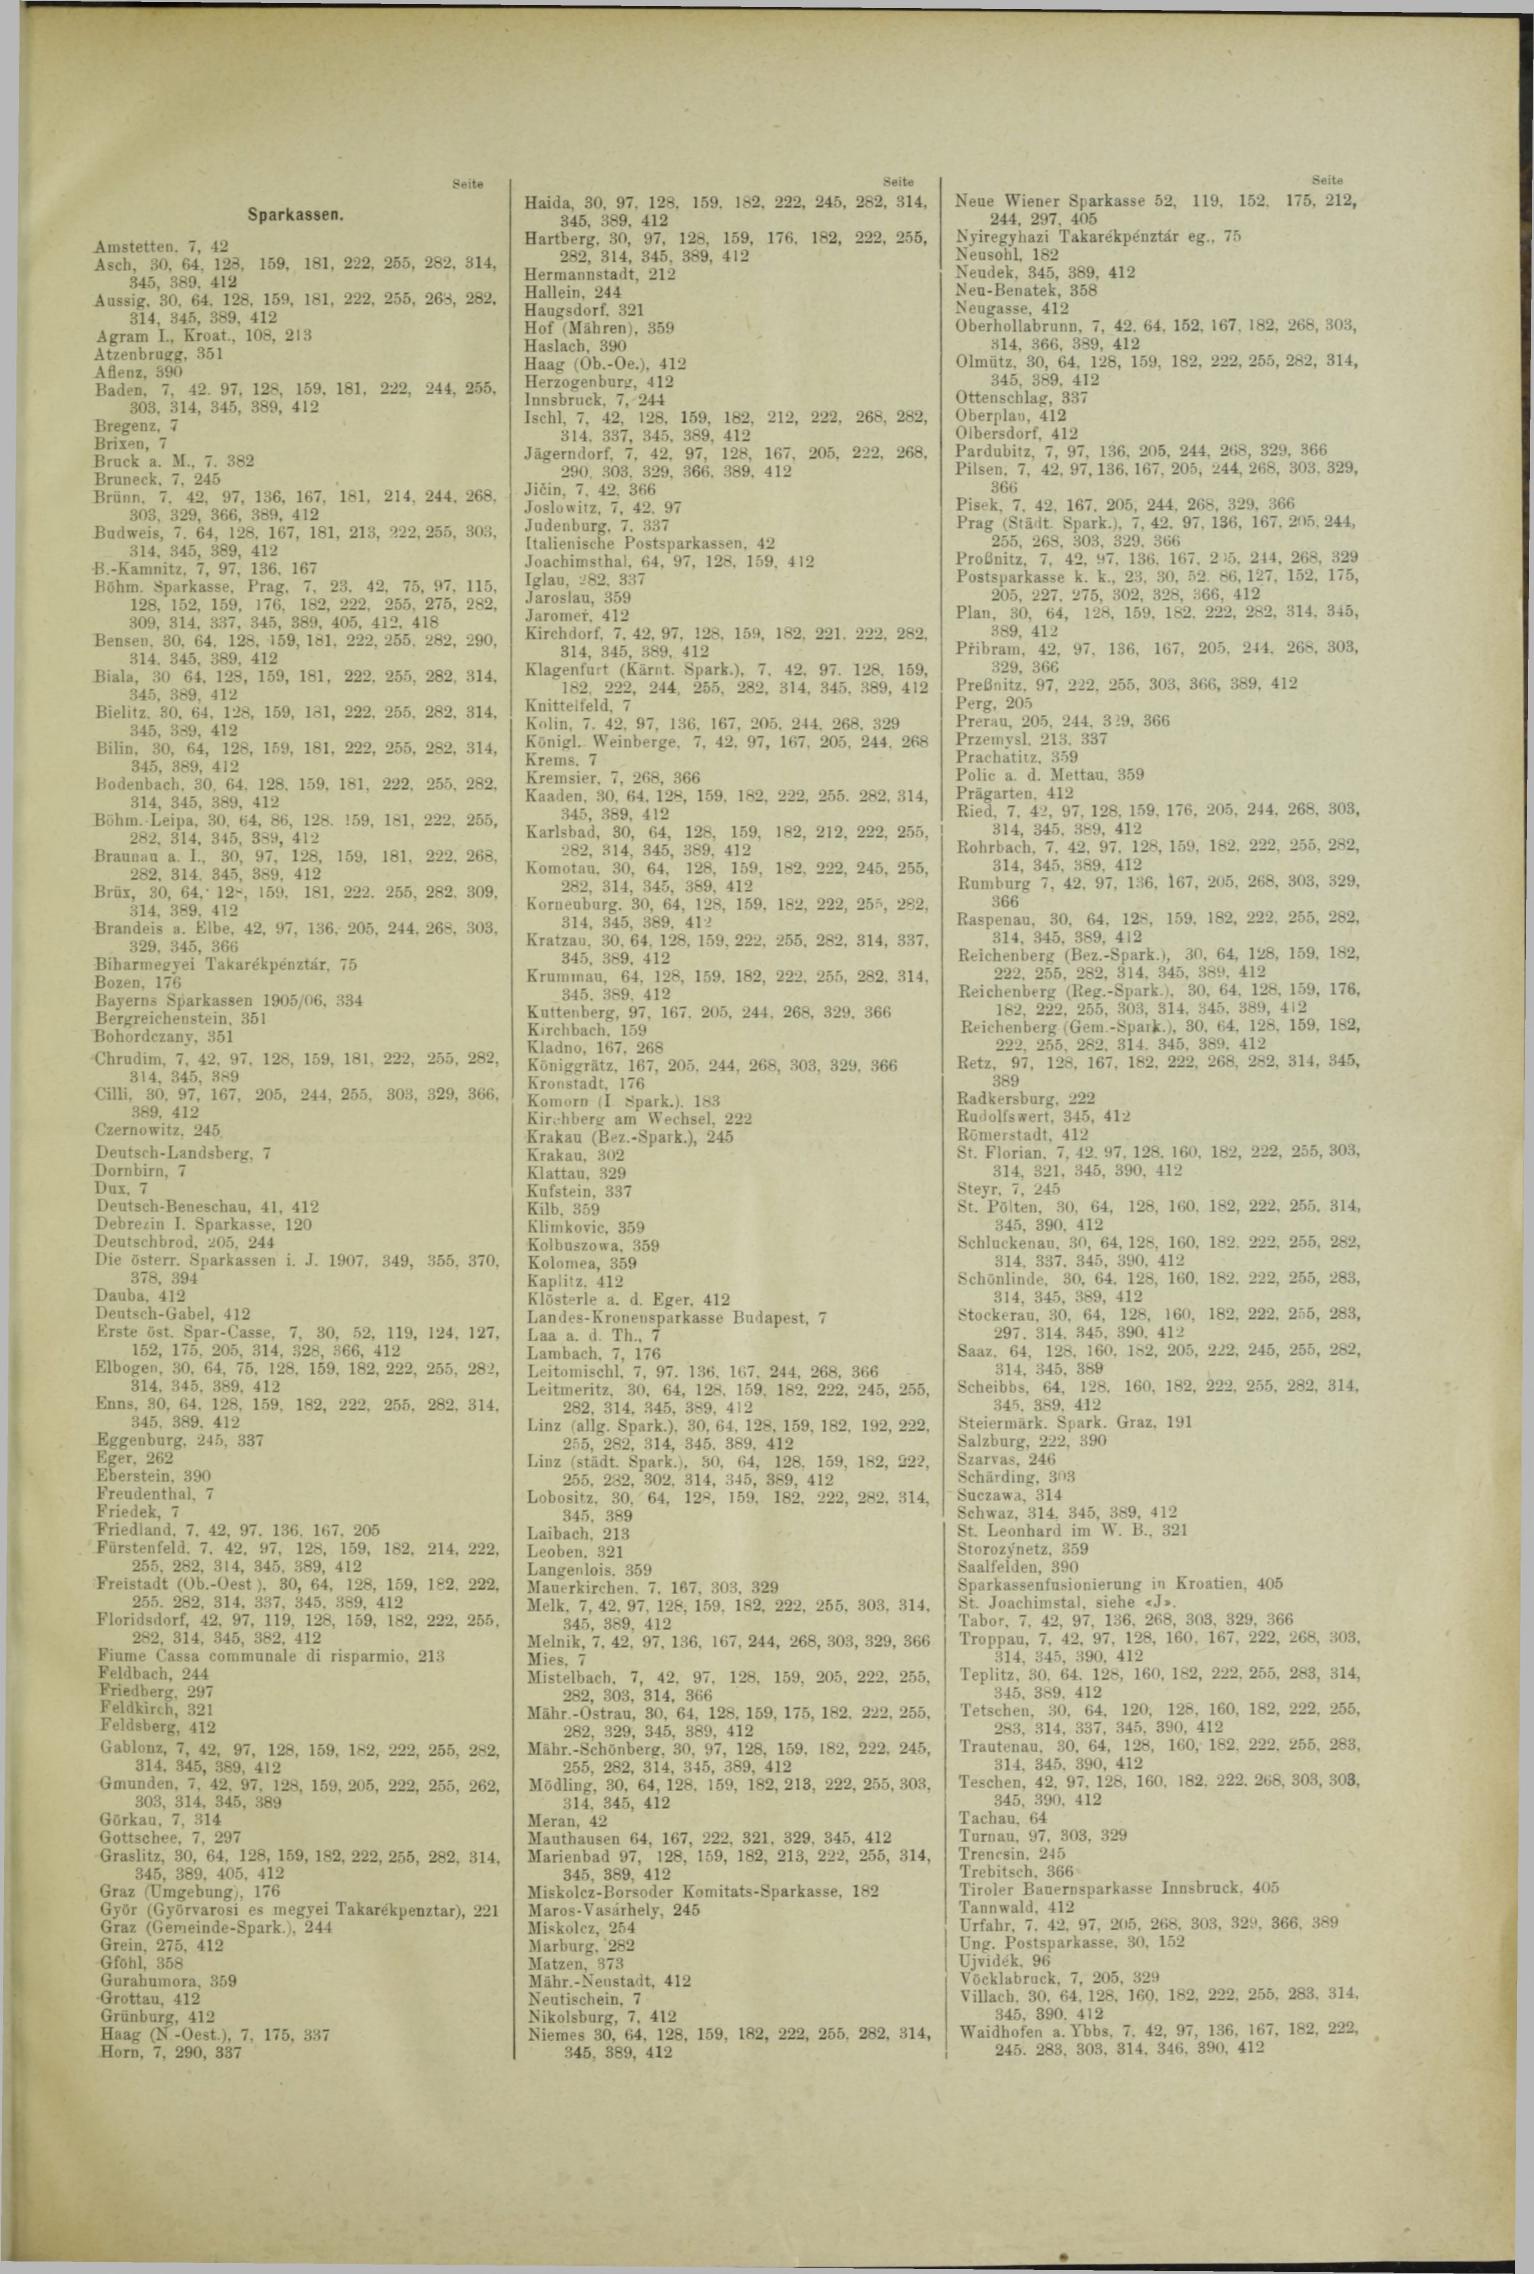 Der Tresor 21.11.1908 - Seite 11